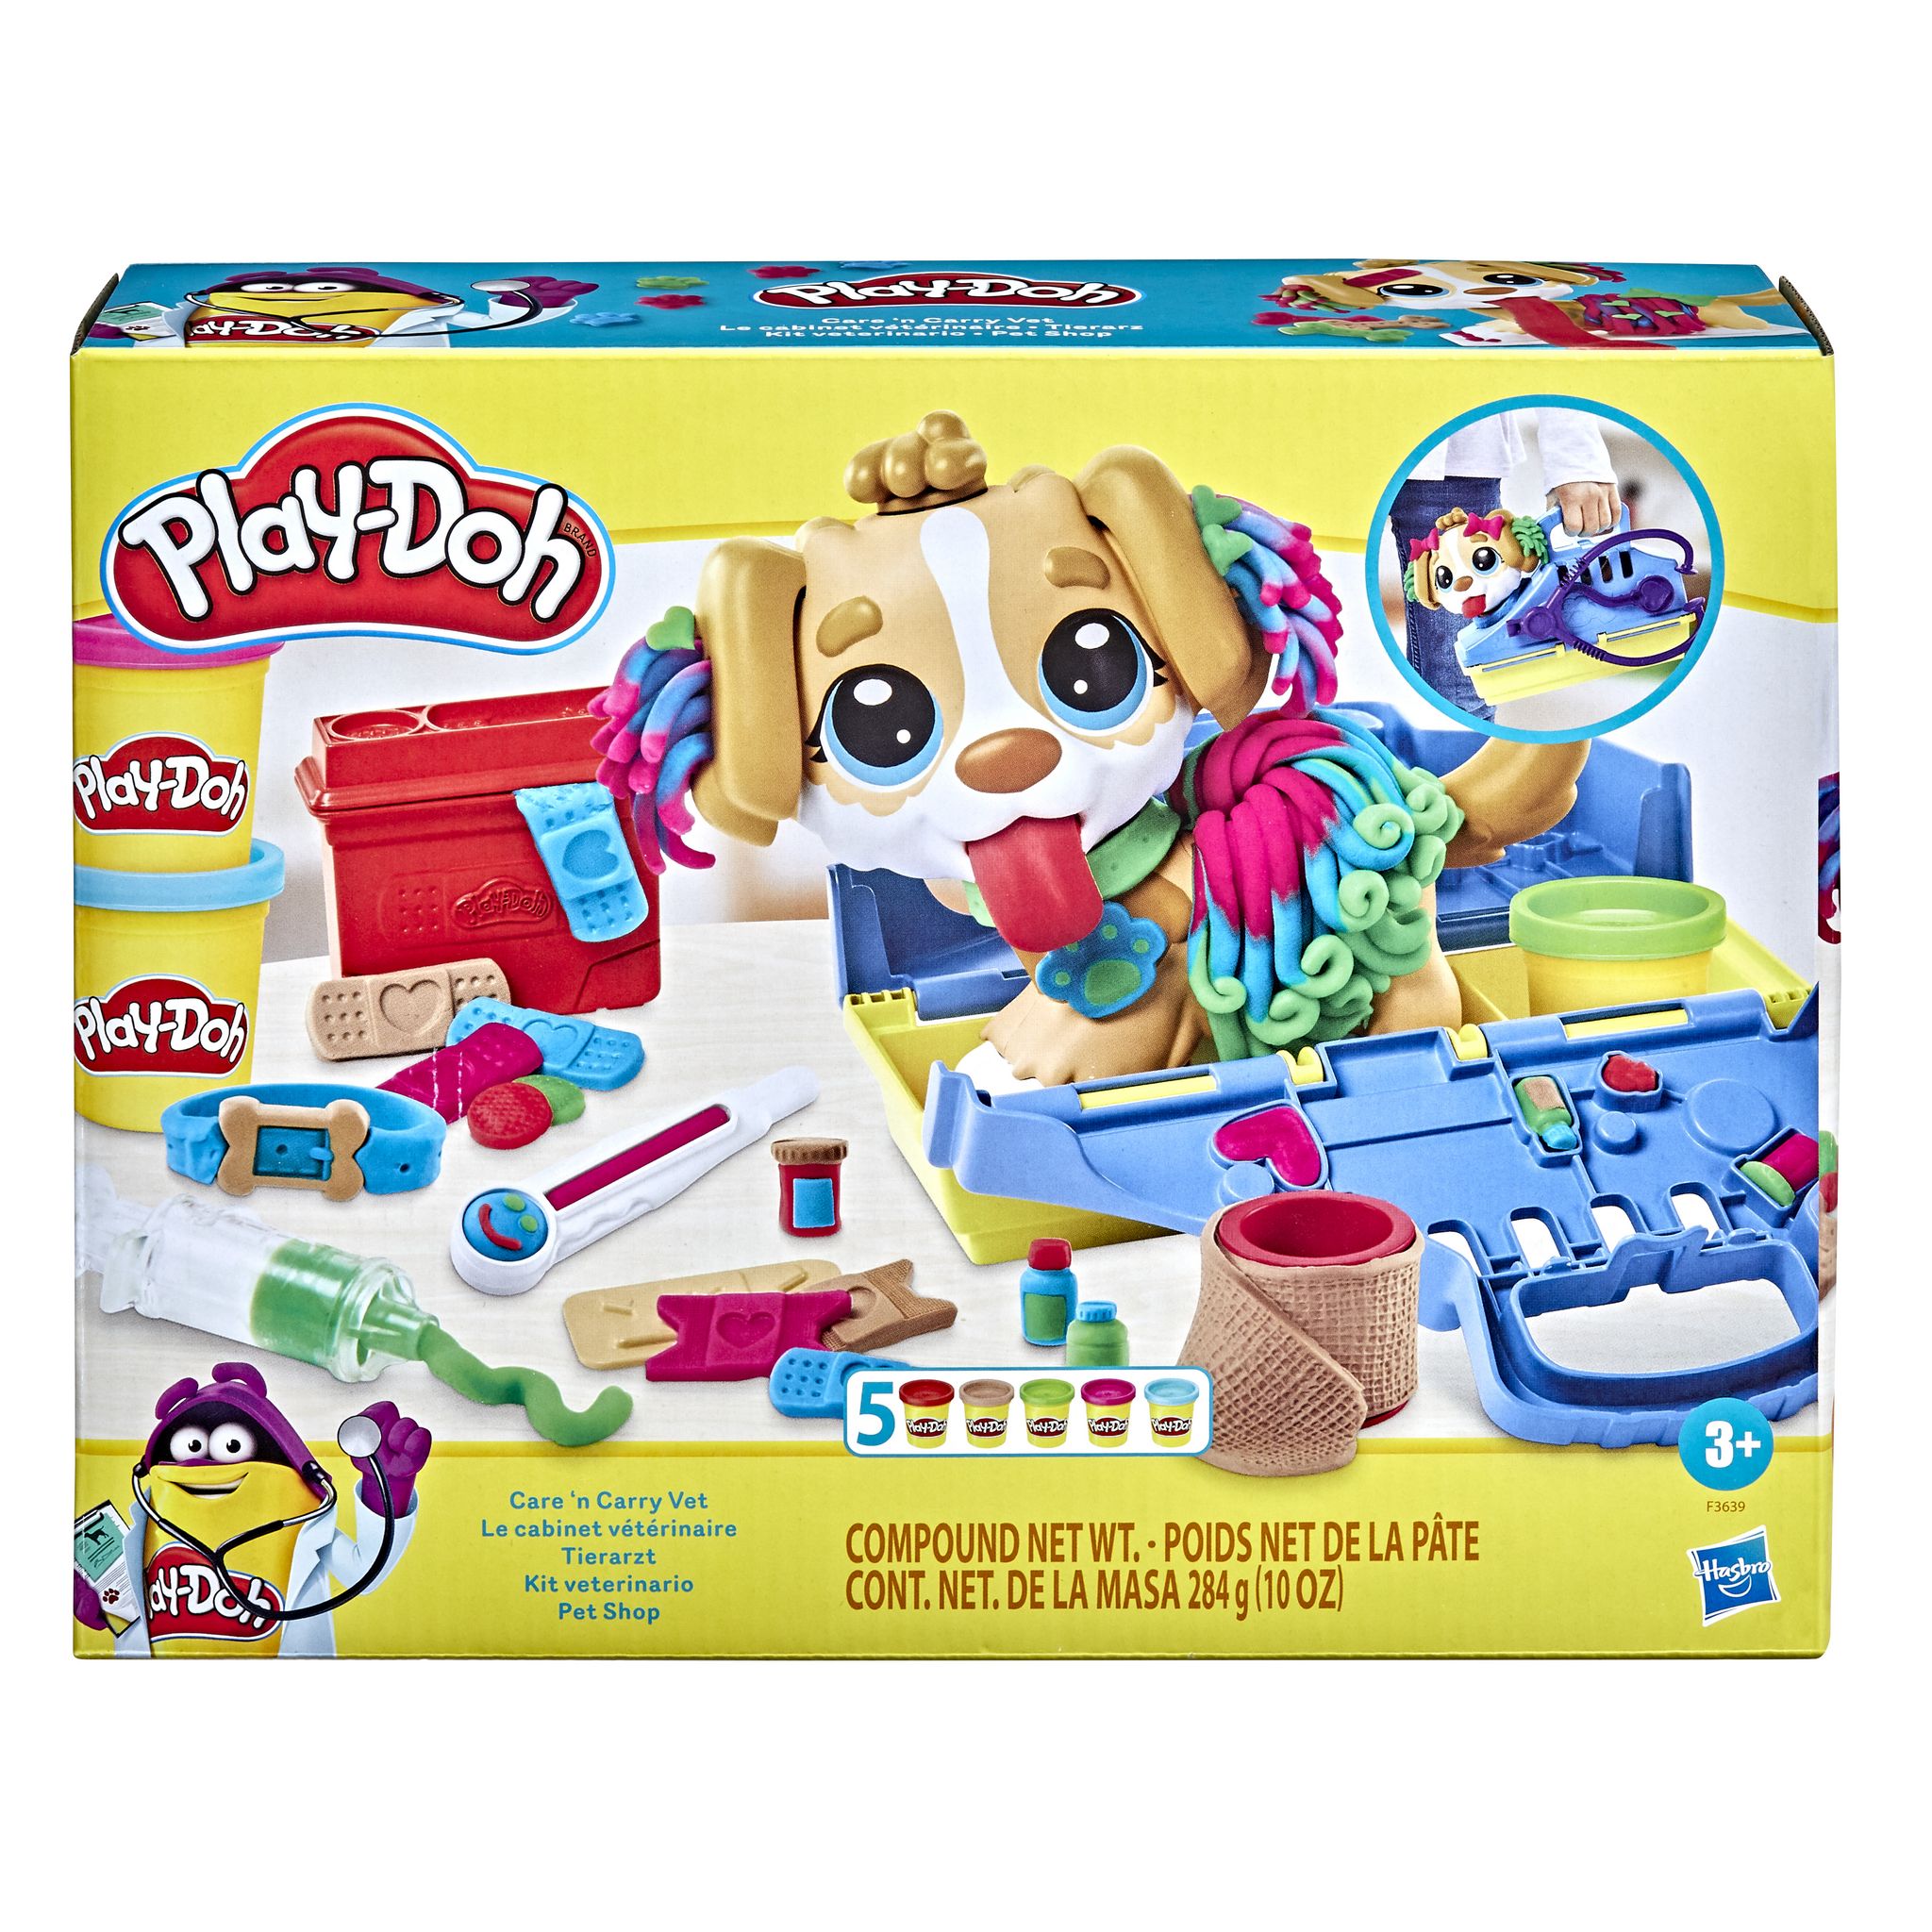 Play-Doh, Mon Premier Kit avec 4 Pots de Pâte a Modeler & Pte à